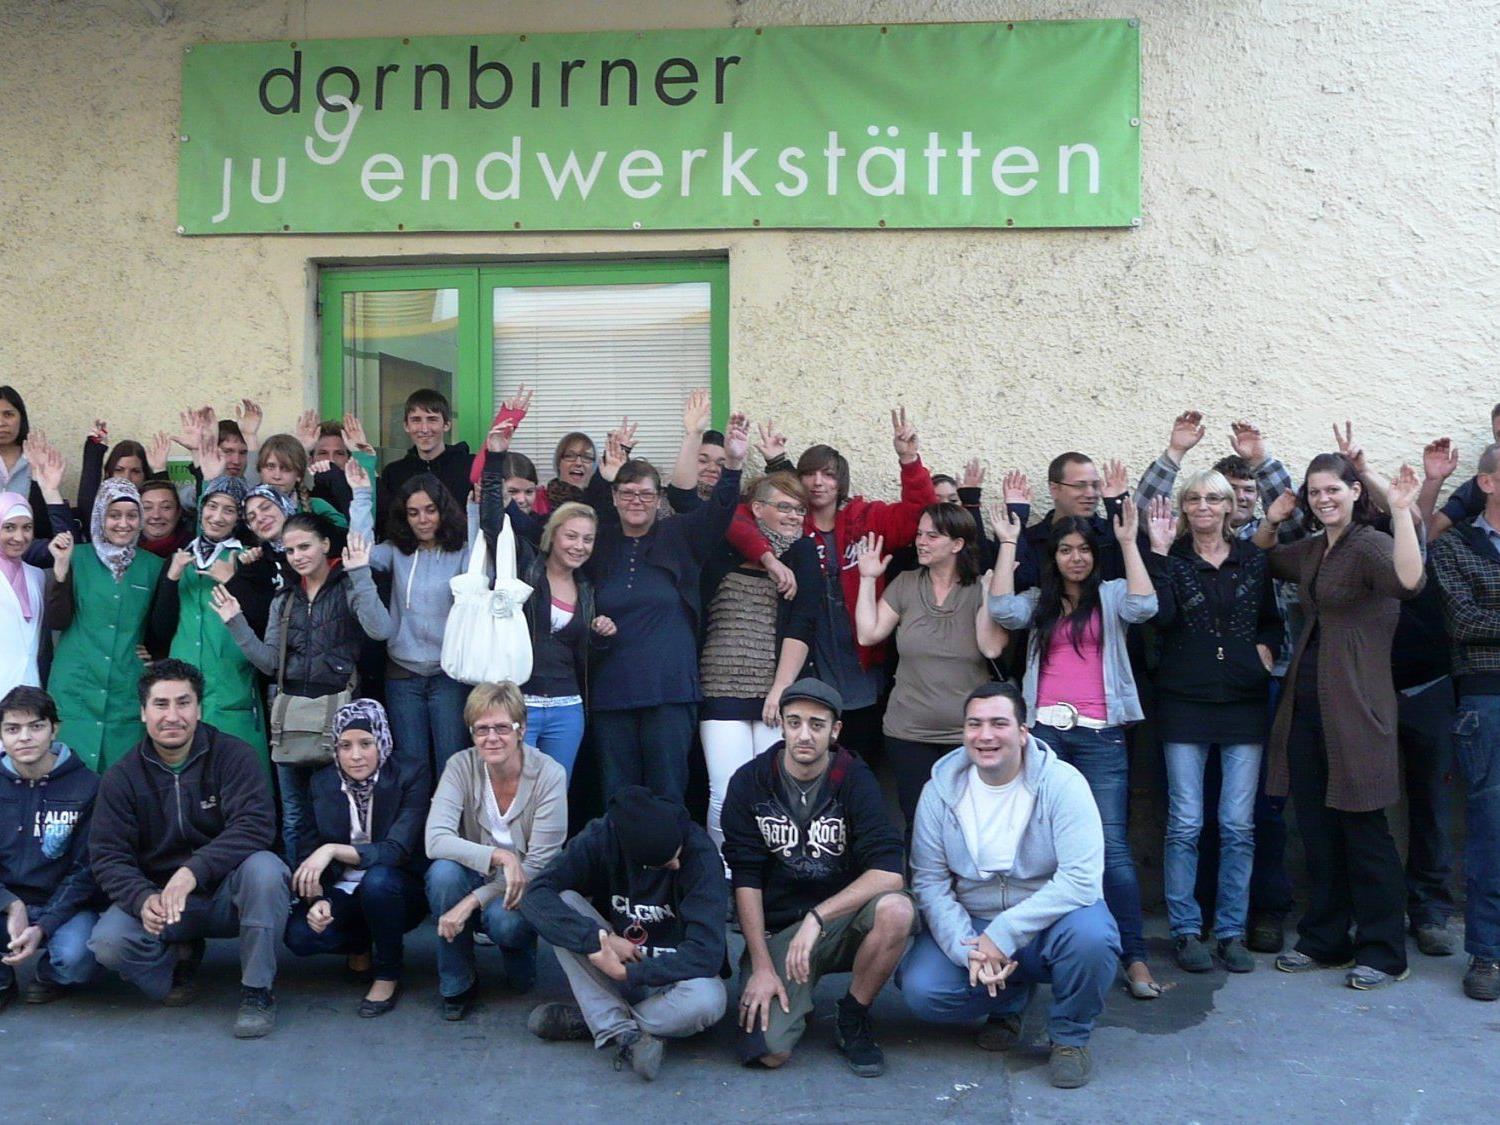 Knapp 200 Jugendliche betreute das Team der Dornbirner Jugendwerkstätten rund um Geschäftsführer Elmar Luger 2011 in Dornbirn.